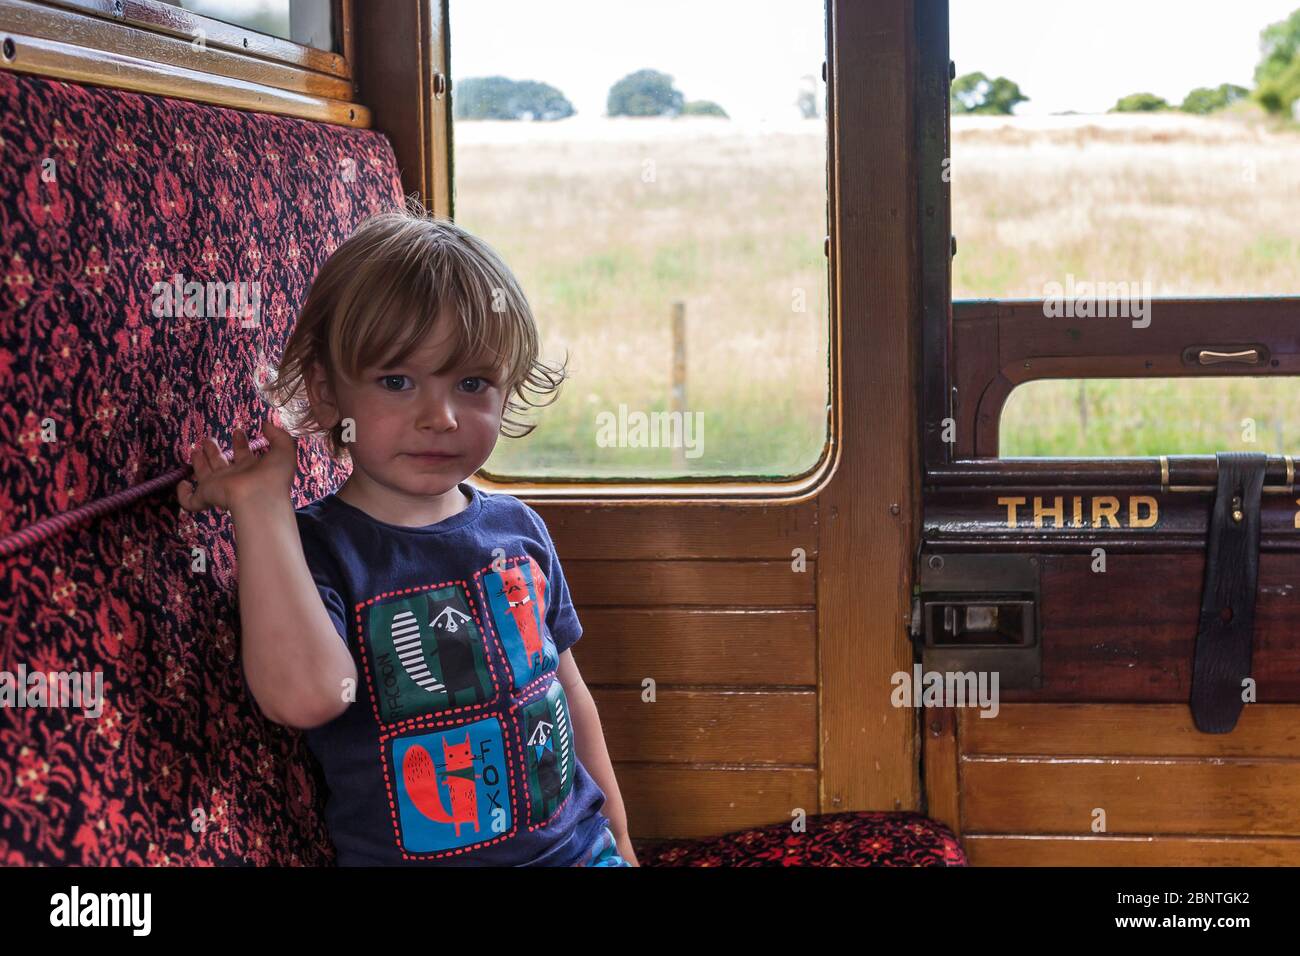 Petit garçon (2/3 ans) qui profite de son trajet sur le chemin de fer à vapeur de l'île de Wight, île de Wight, Royaume-Uni. MODÈLE LIBÉRÉ Banque D'Images